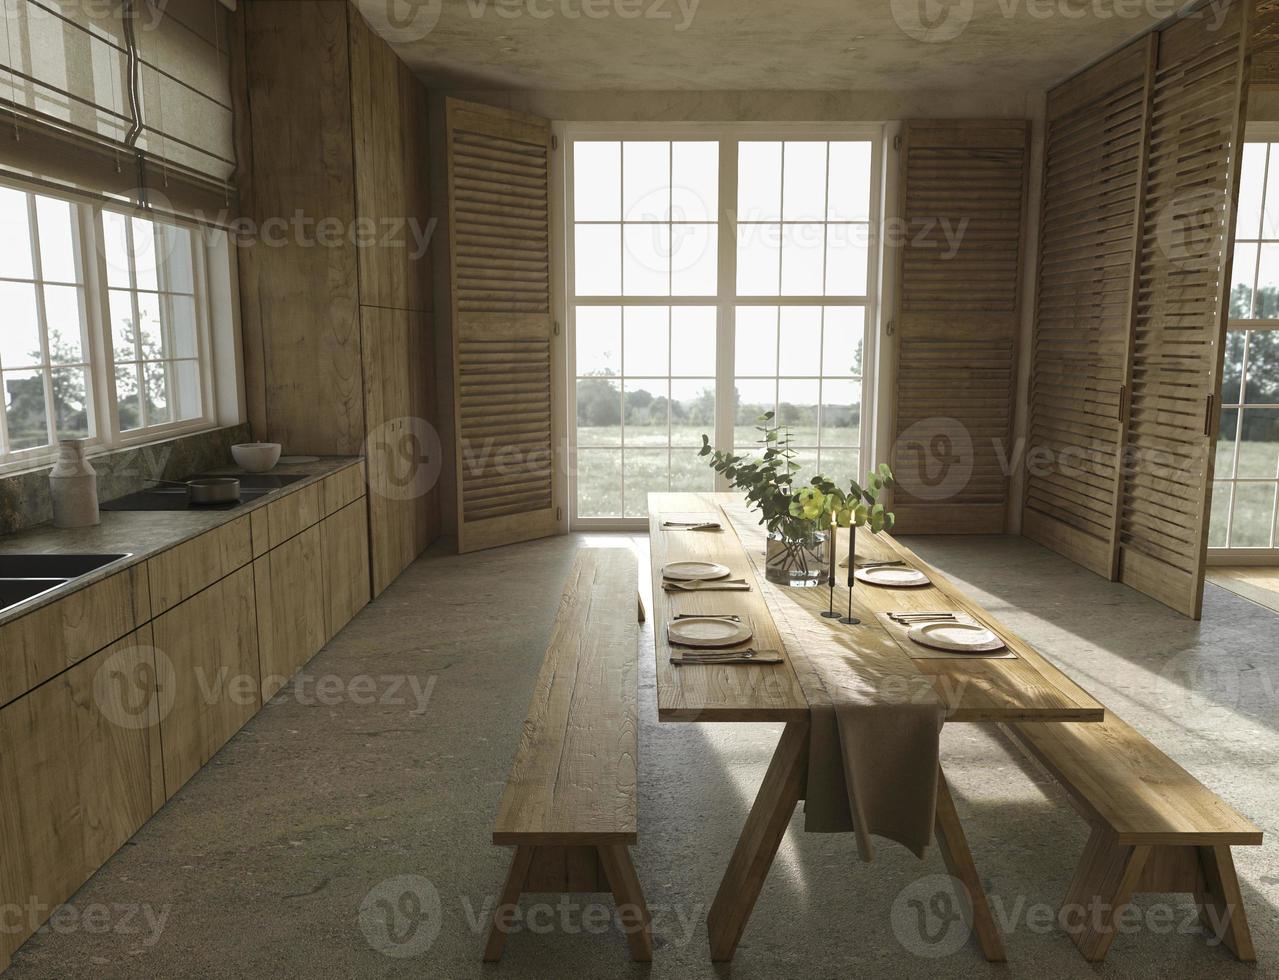 cucina in legno in stile rustico e ampie finestre con vista sulla natura foto